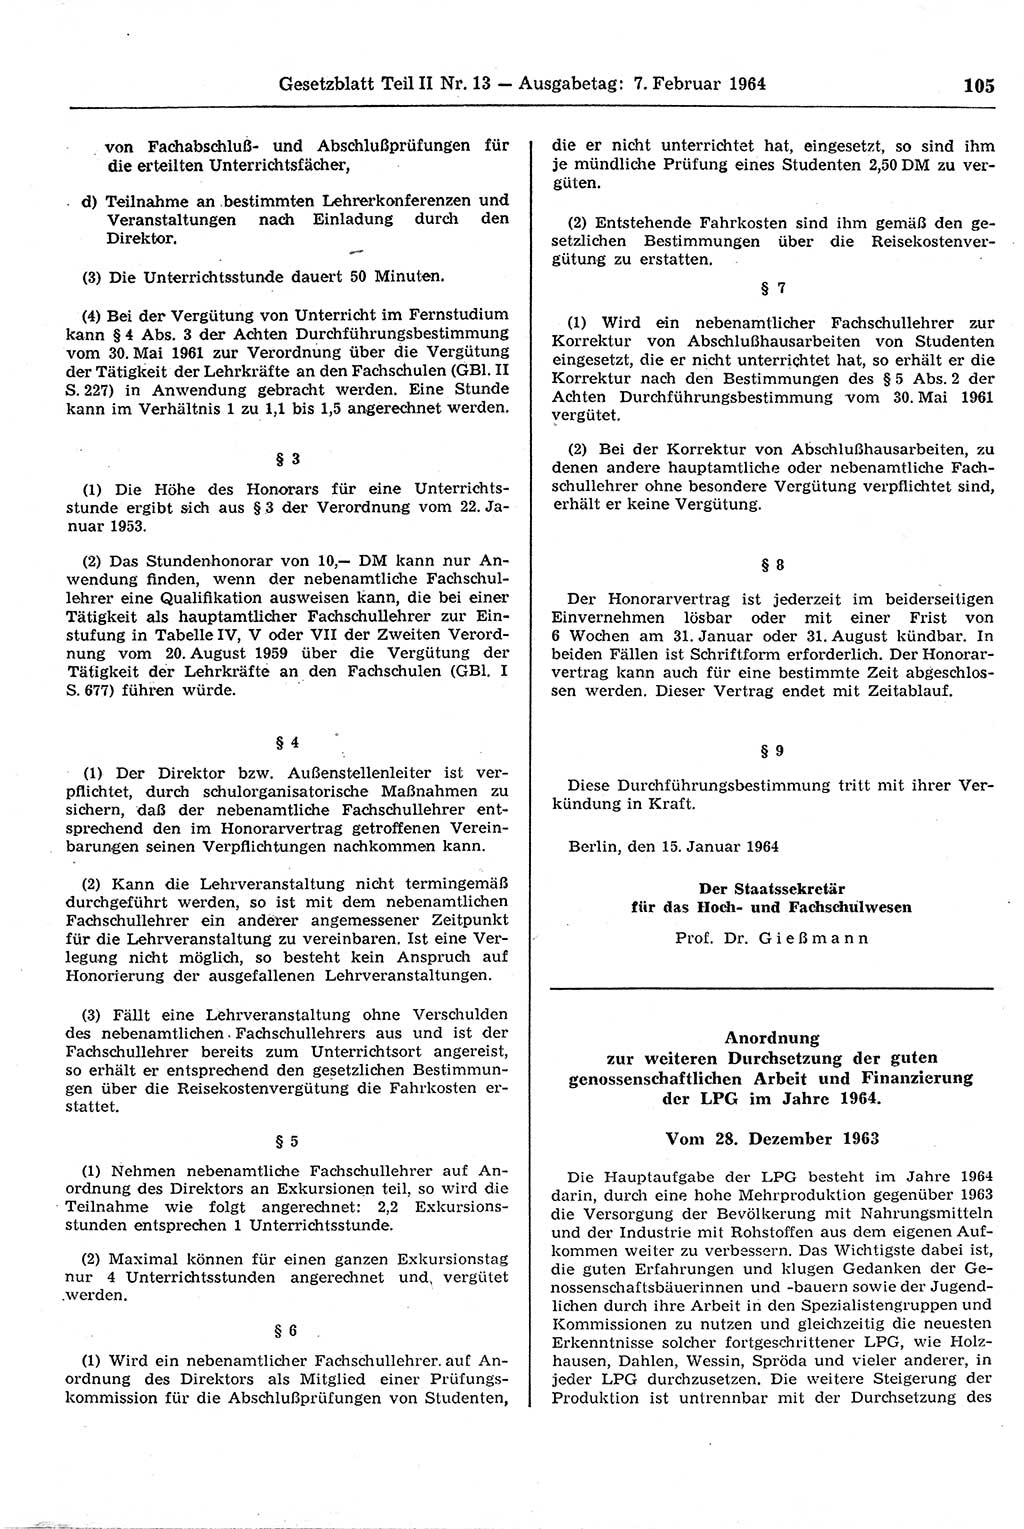 Gesetzblatt (GBl.) der Deutschen Demokratischen Republik (DDR) Teil ⅠⅠ 1964, Seite 105 (GBl. DDR ⅠⅠ 1964, S. 105)